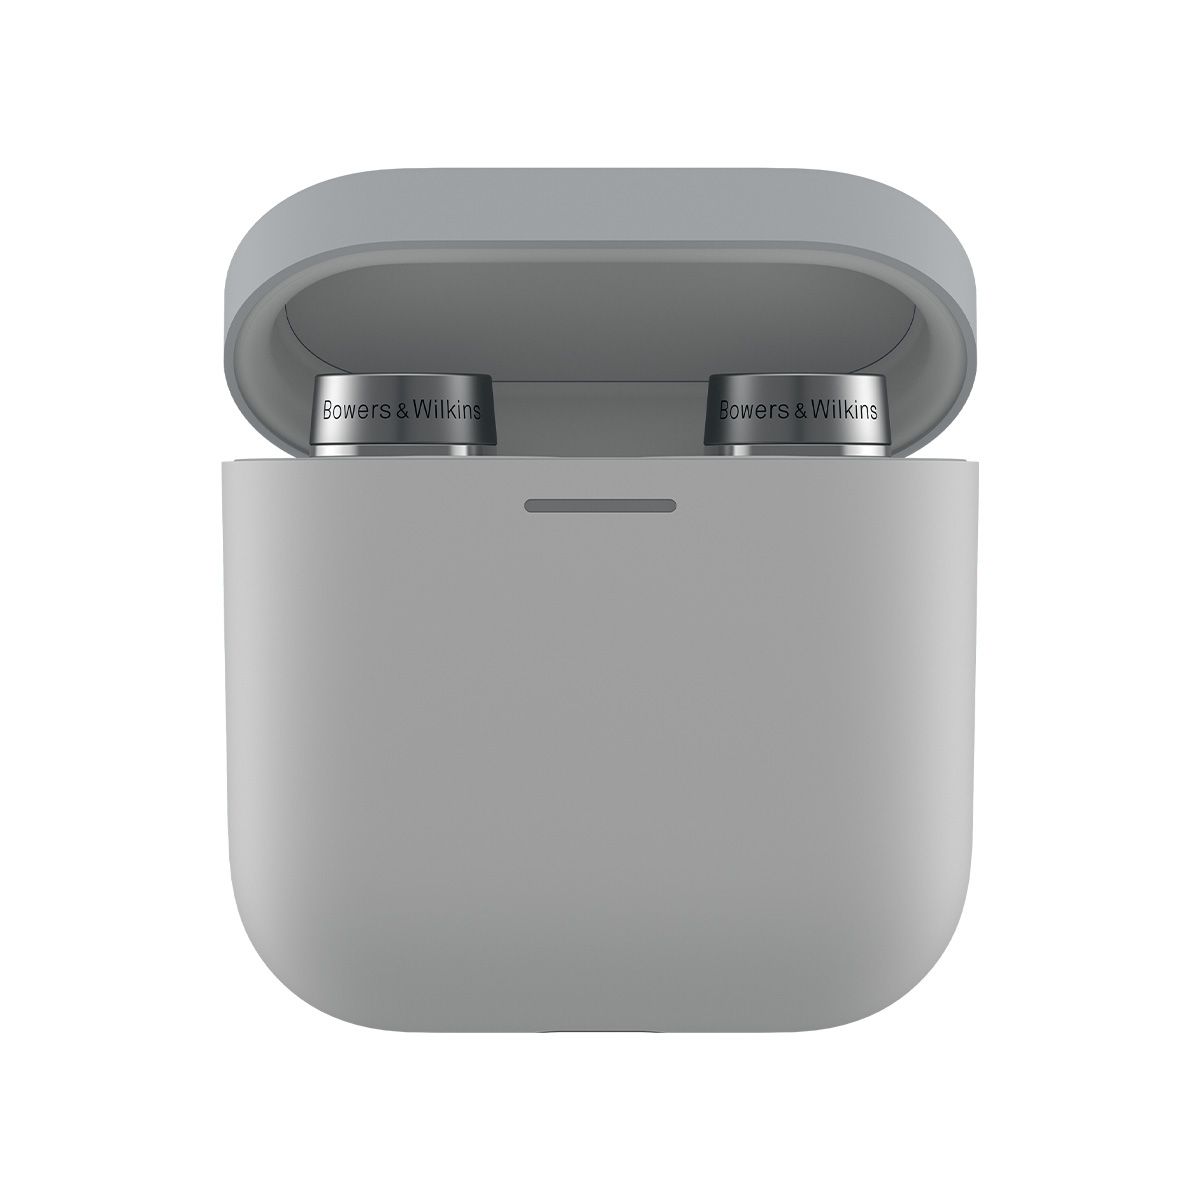 Bowers & Wilkins Pi5 S2 Wireless In-Ear Headphones inside case - straight on